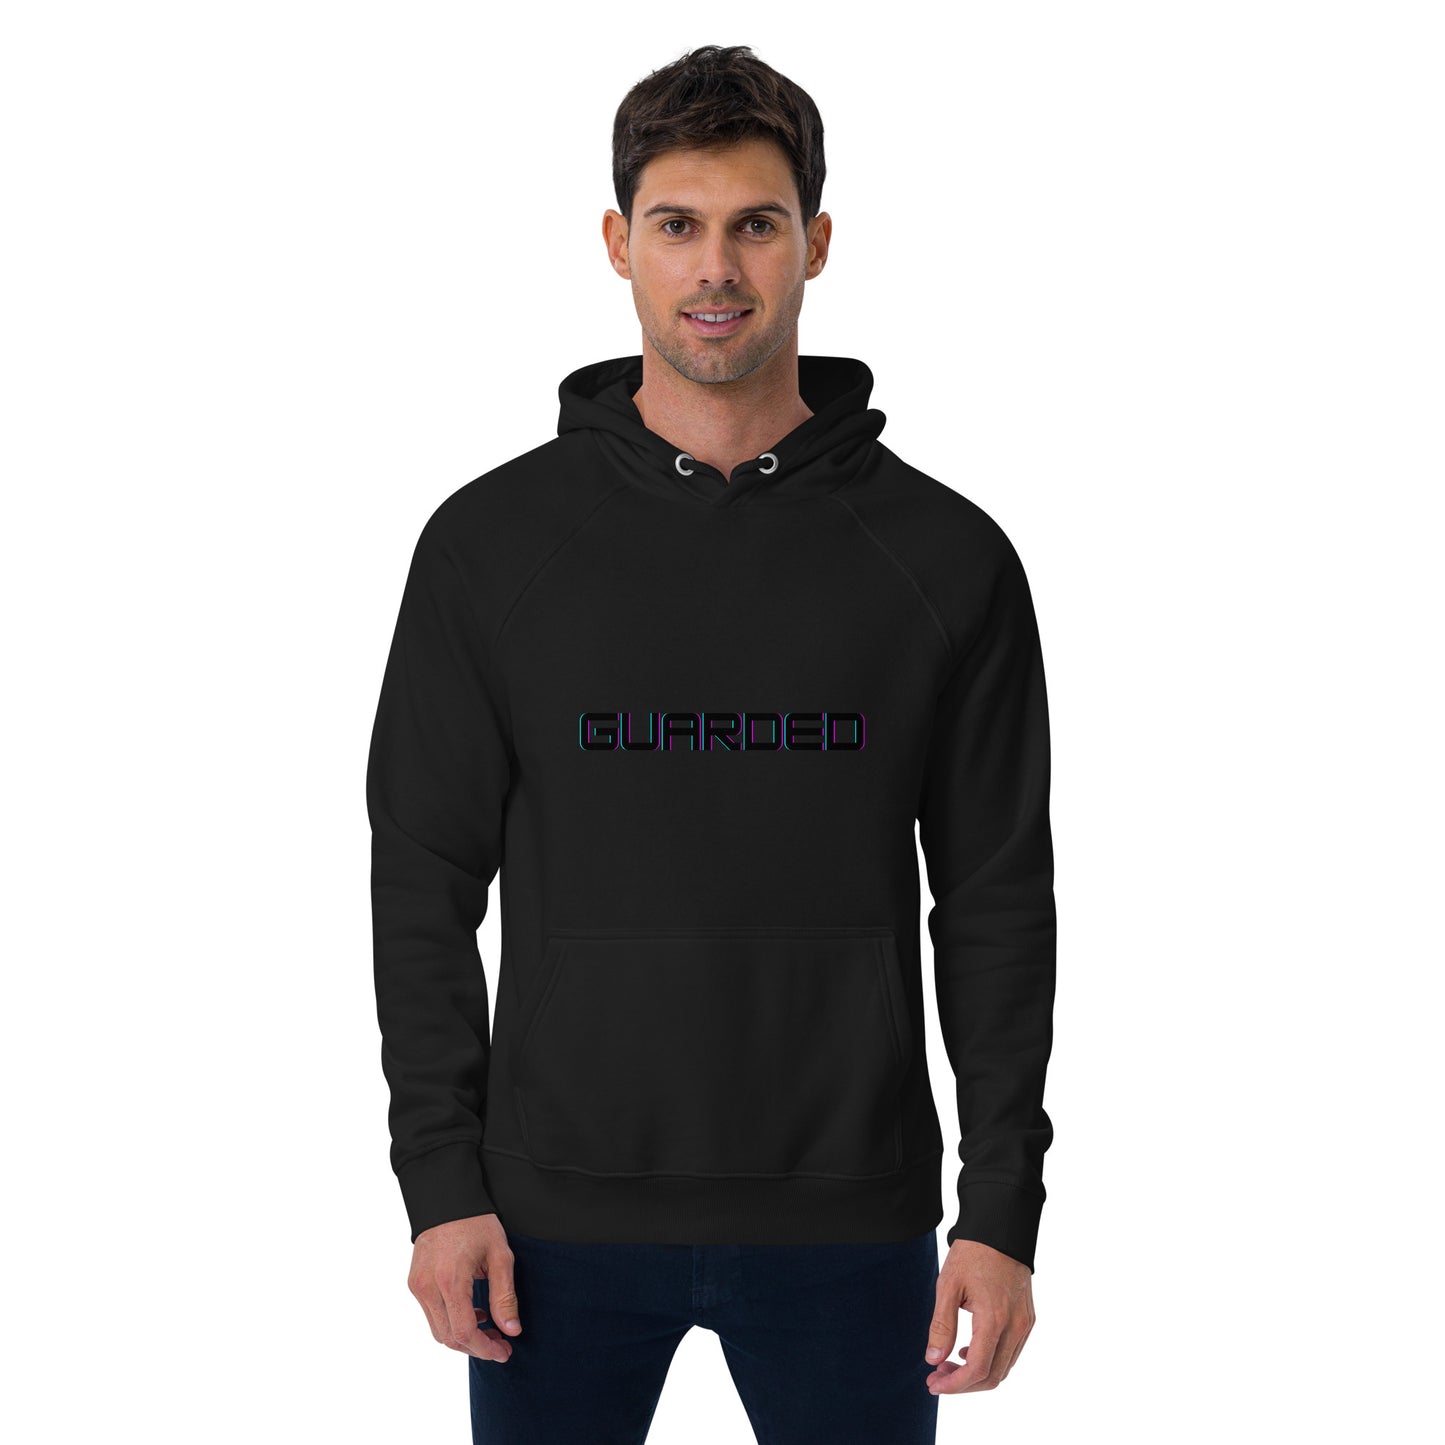 Blessed black  cross Unisex eco raglan hoodie